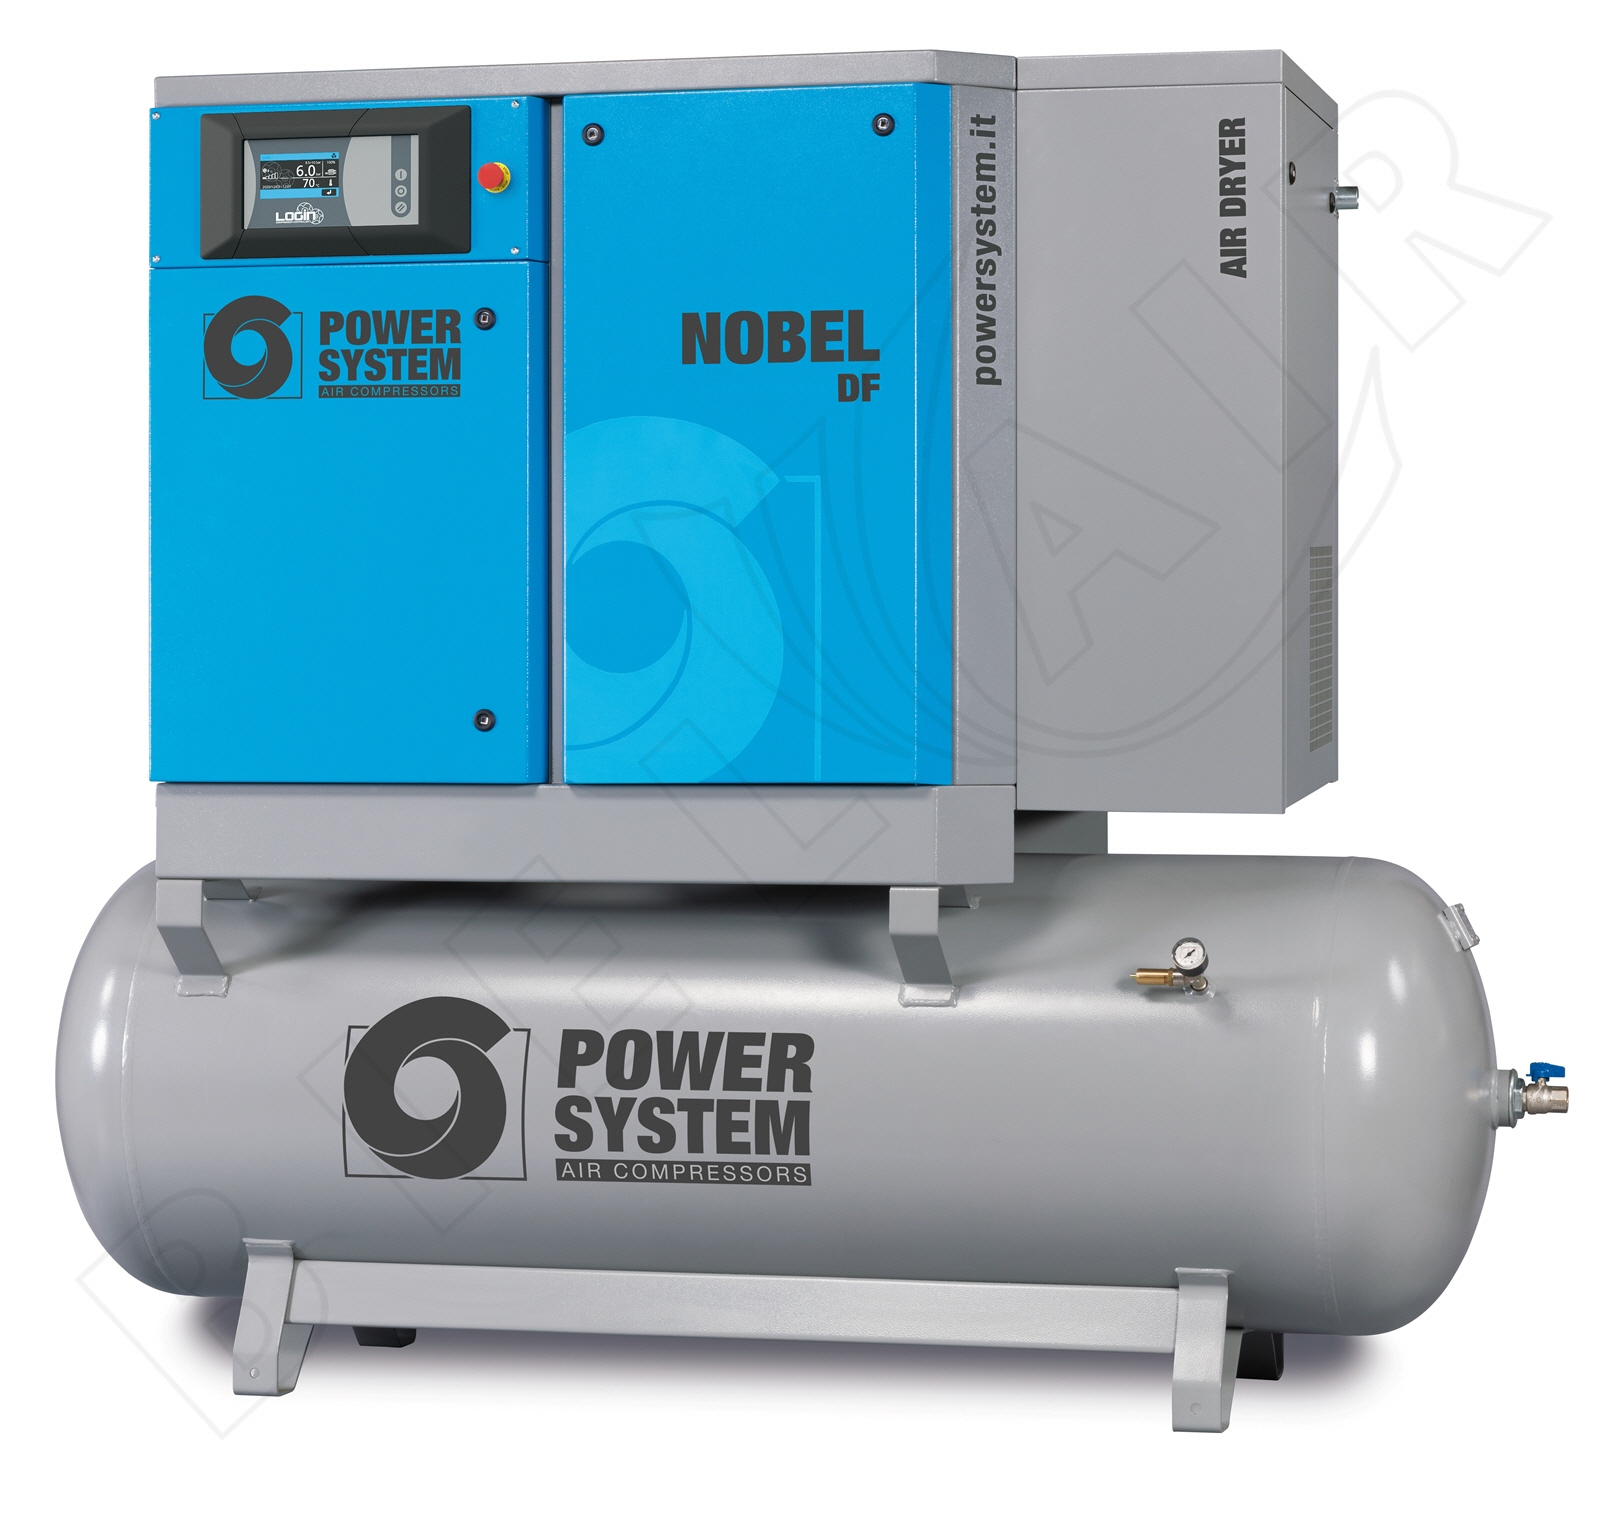 POWERSYSTEM Schraubenkompressor NOBEL 15-10 500 DF (IE3) LOGIN Standard mit Behälter und Kältetrockner